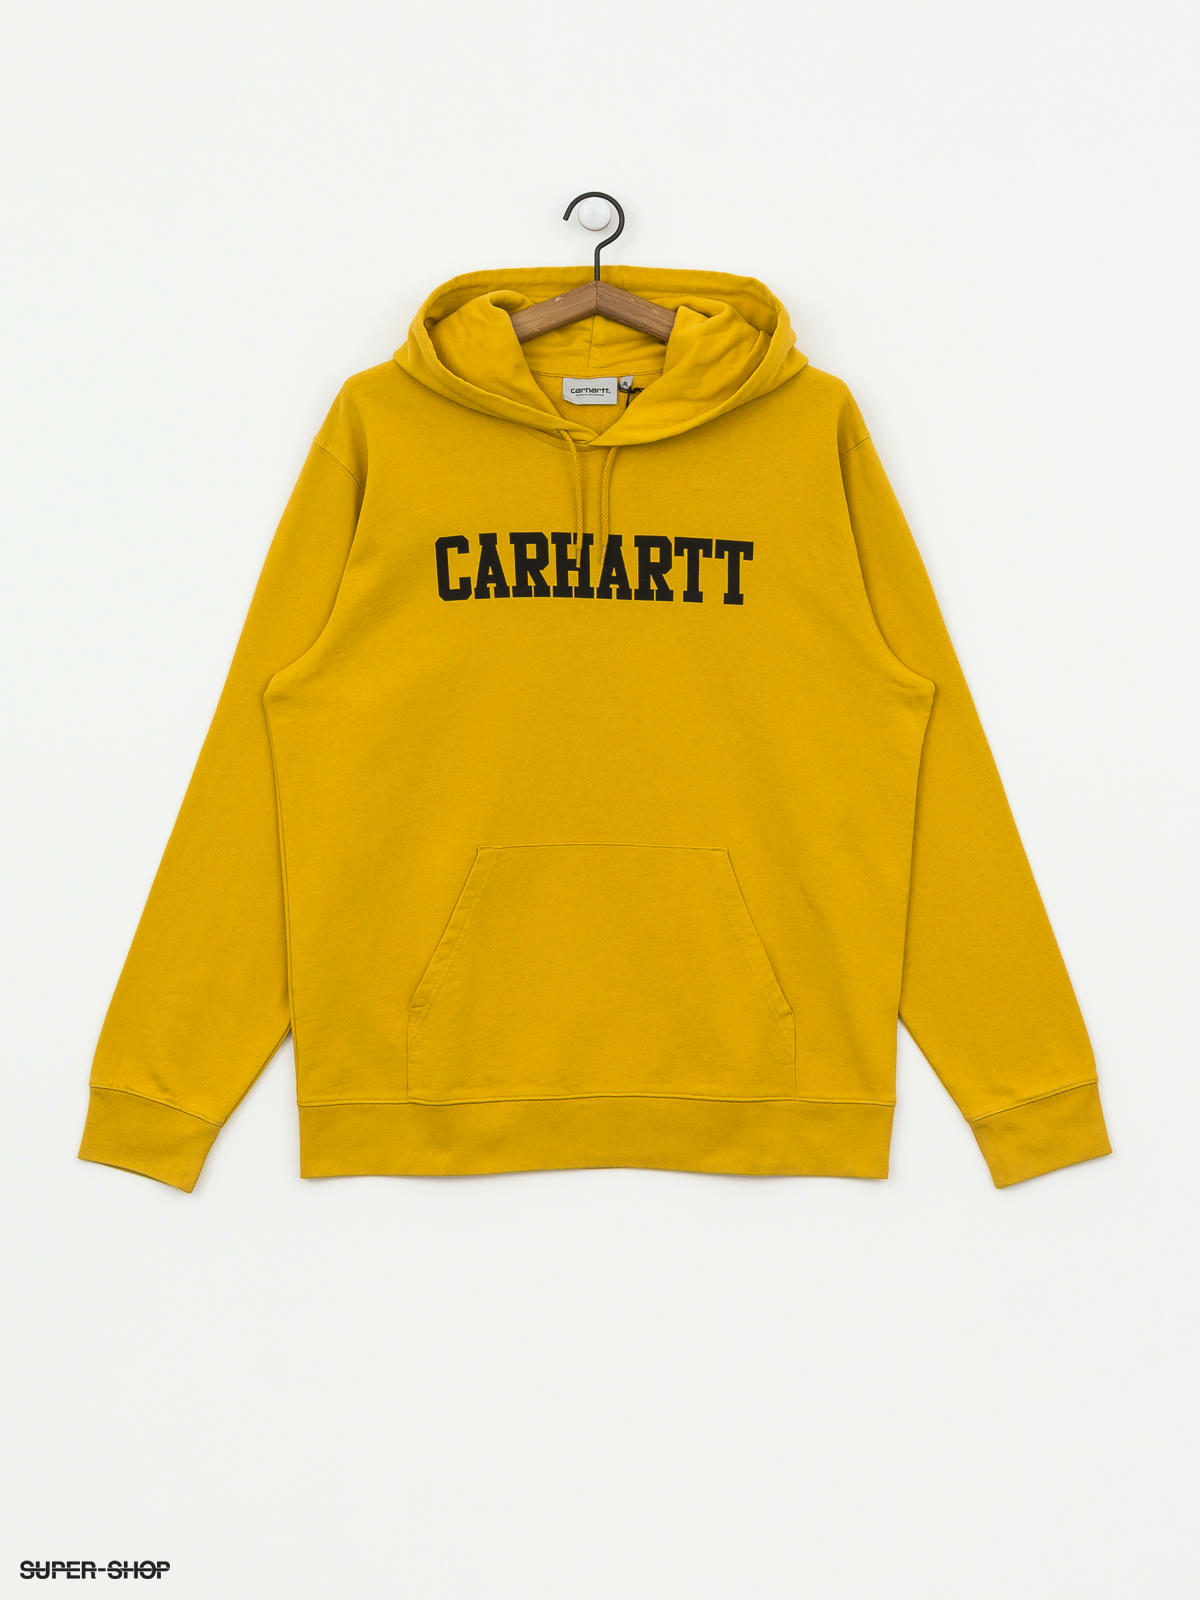 carhartt hoodie colors